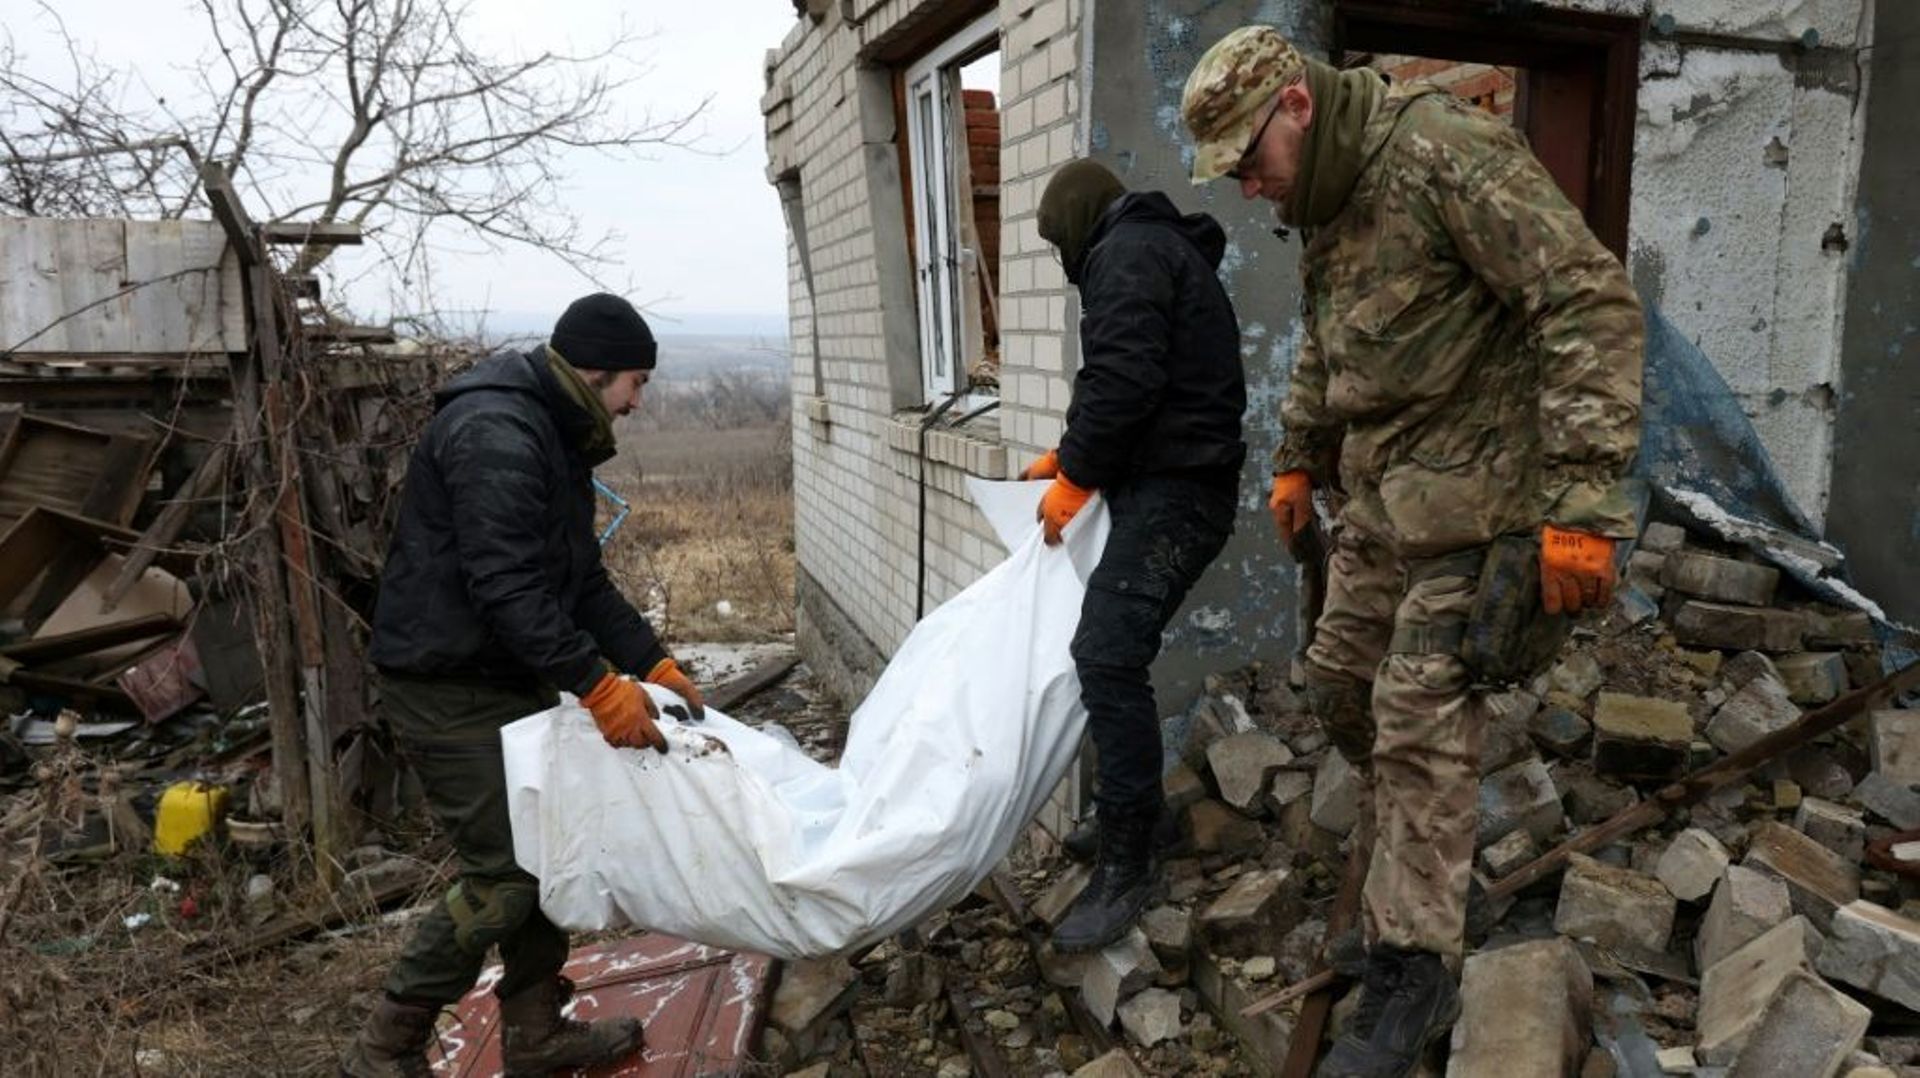 Des bénévoles ukrainiens portent le corps d'un soldat russe tué dans les combats, qu'ils viennent d'exhumer, le 18 janvier 2023 à Dolina, dans la région de Donetsk